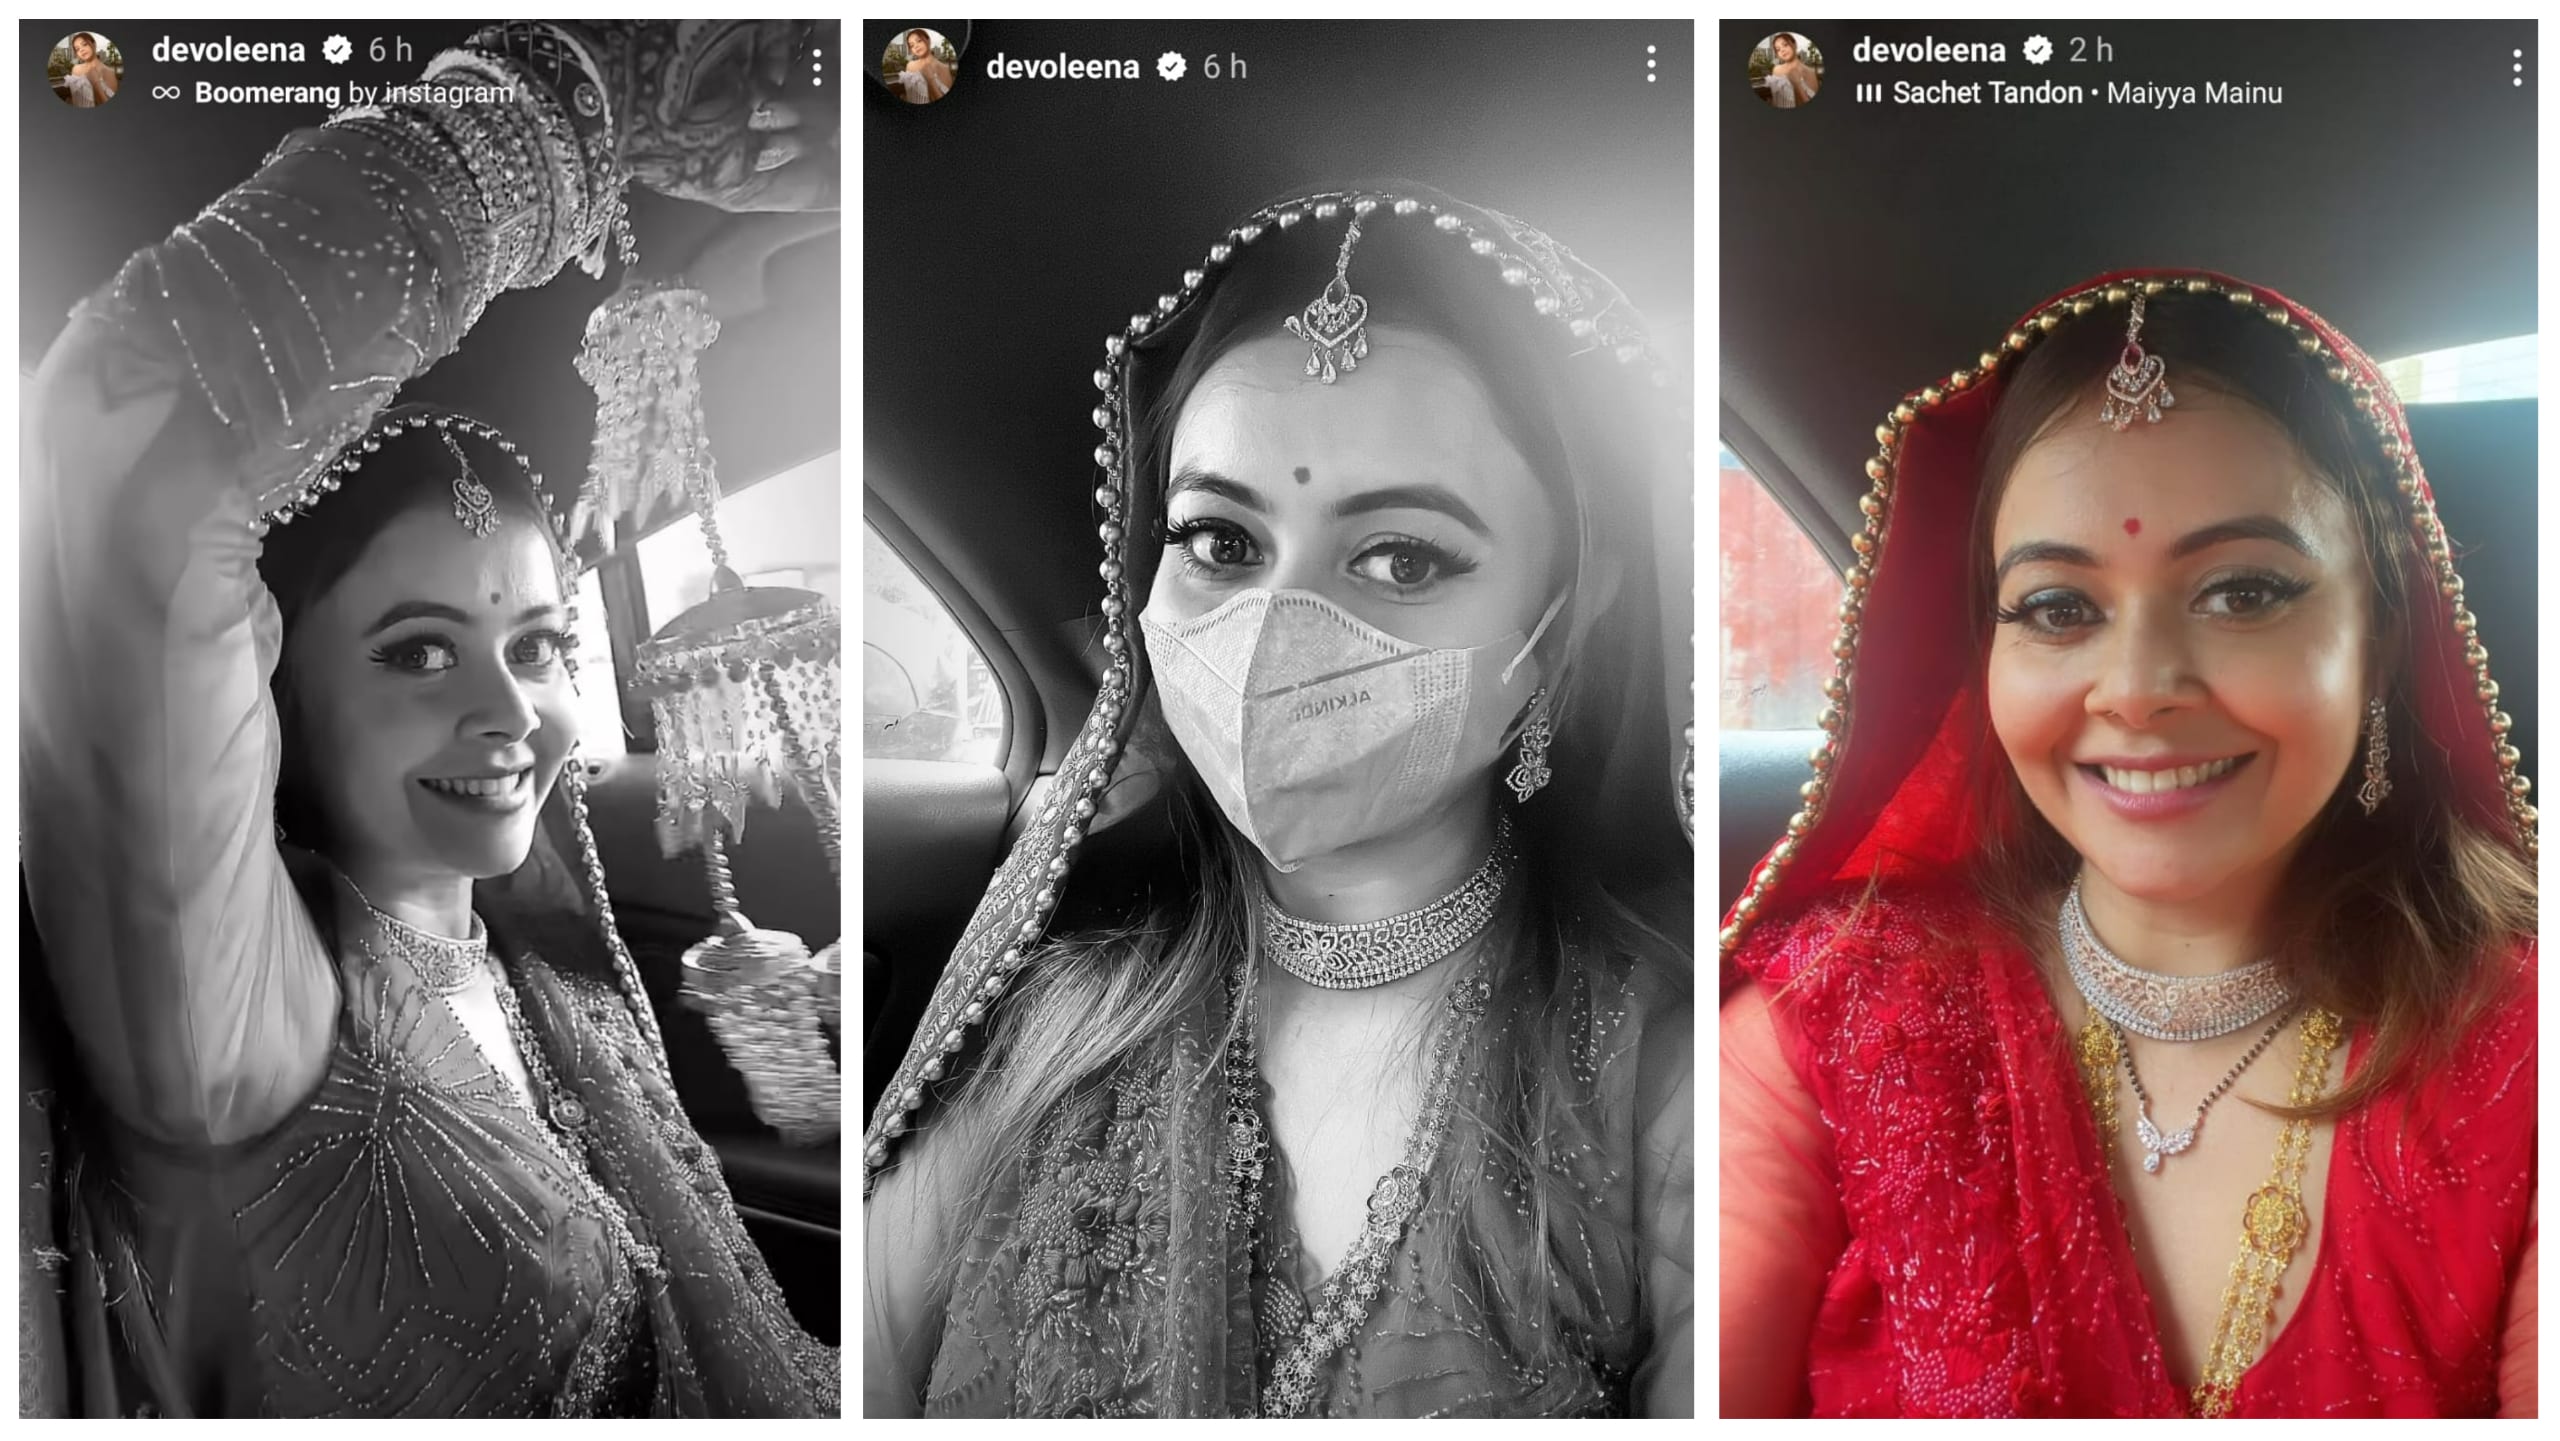 Devoleena Bhattacharjee dressed as a bride.